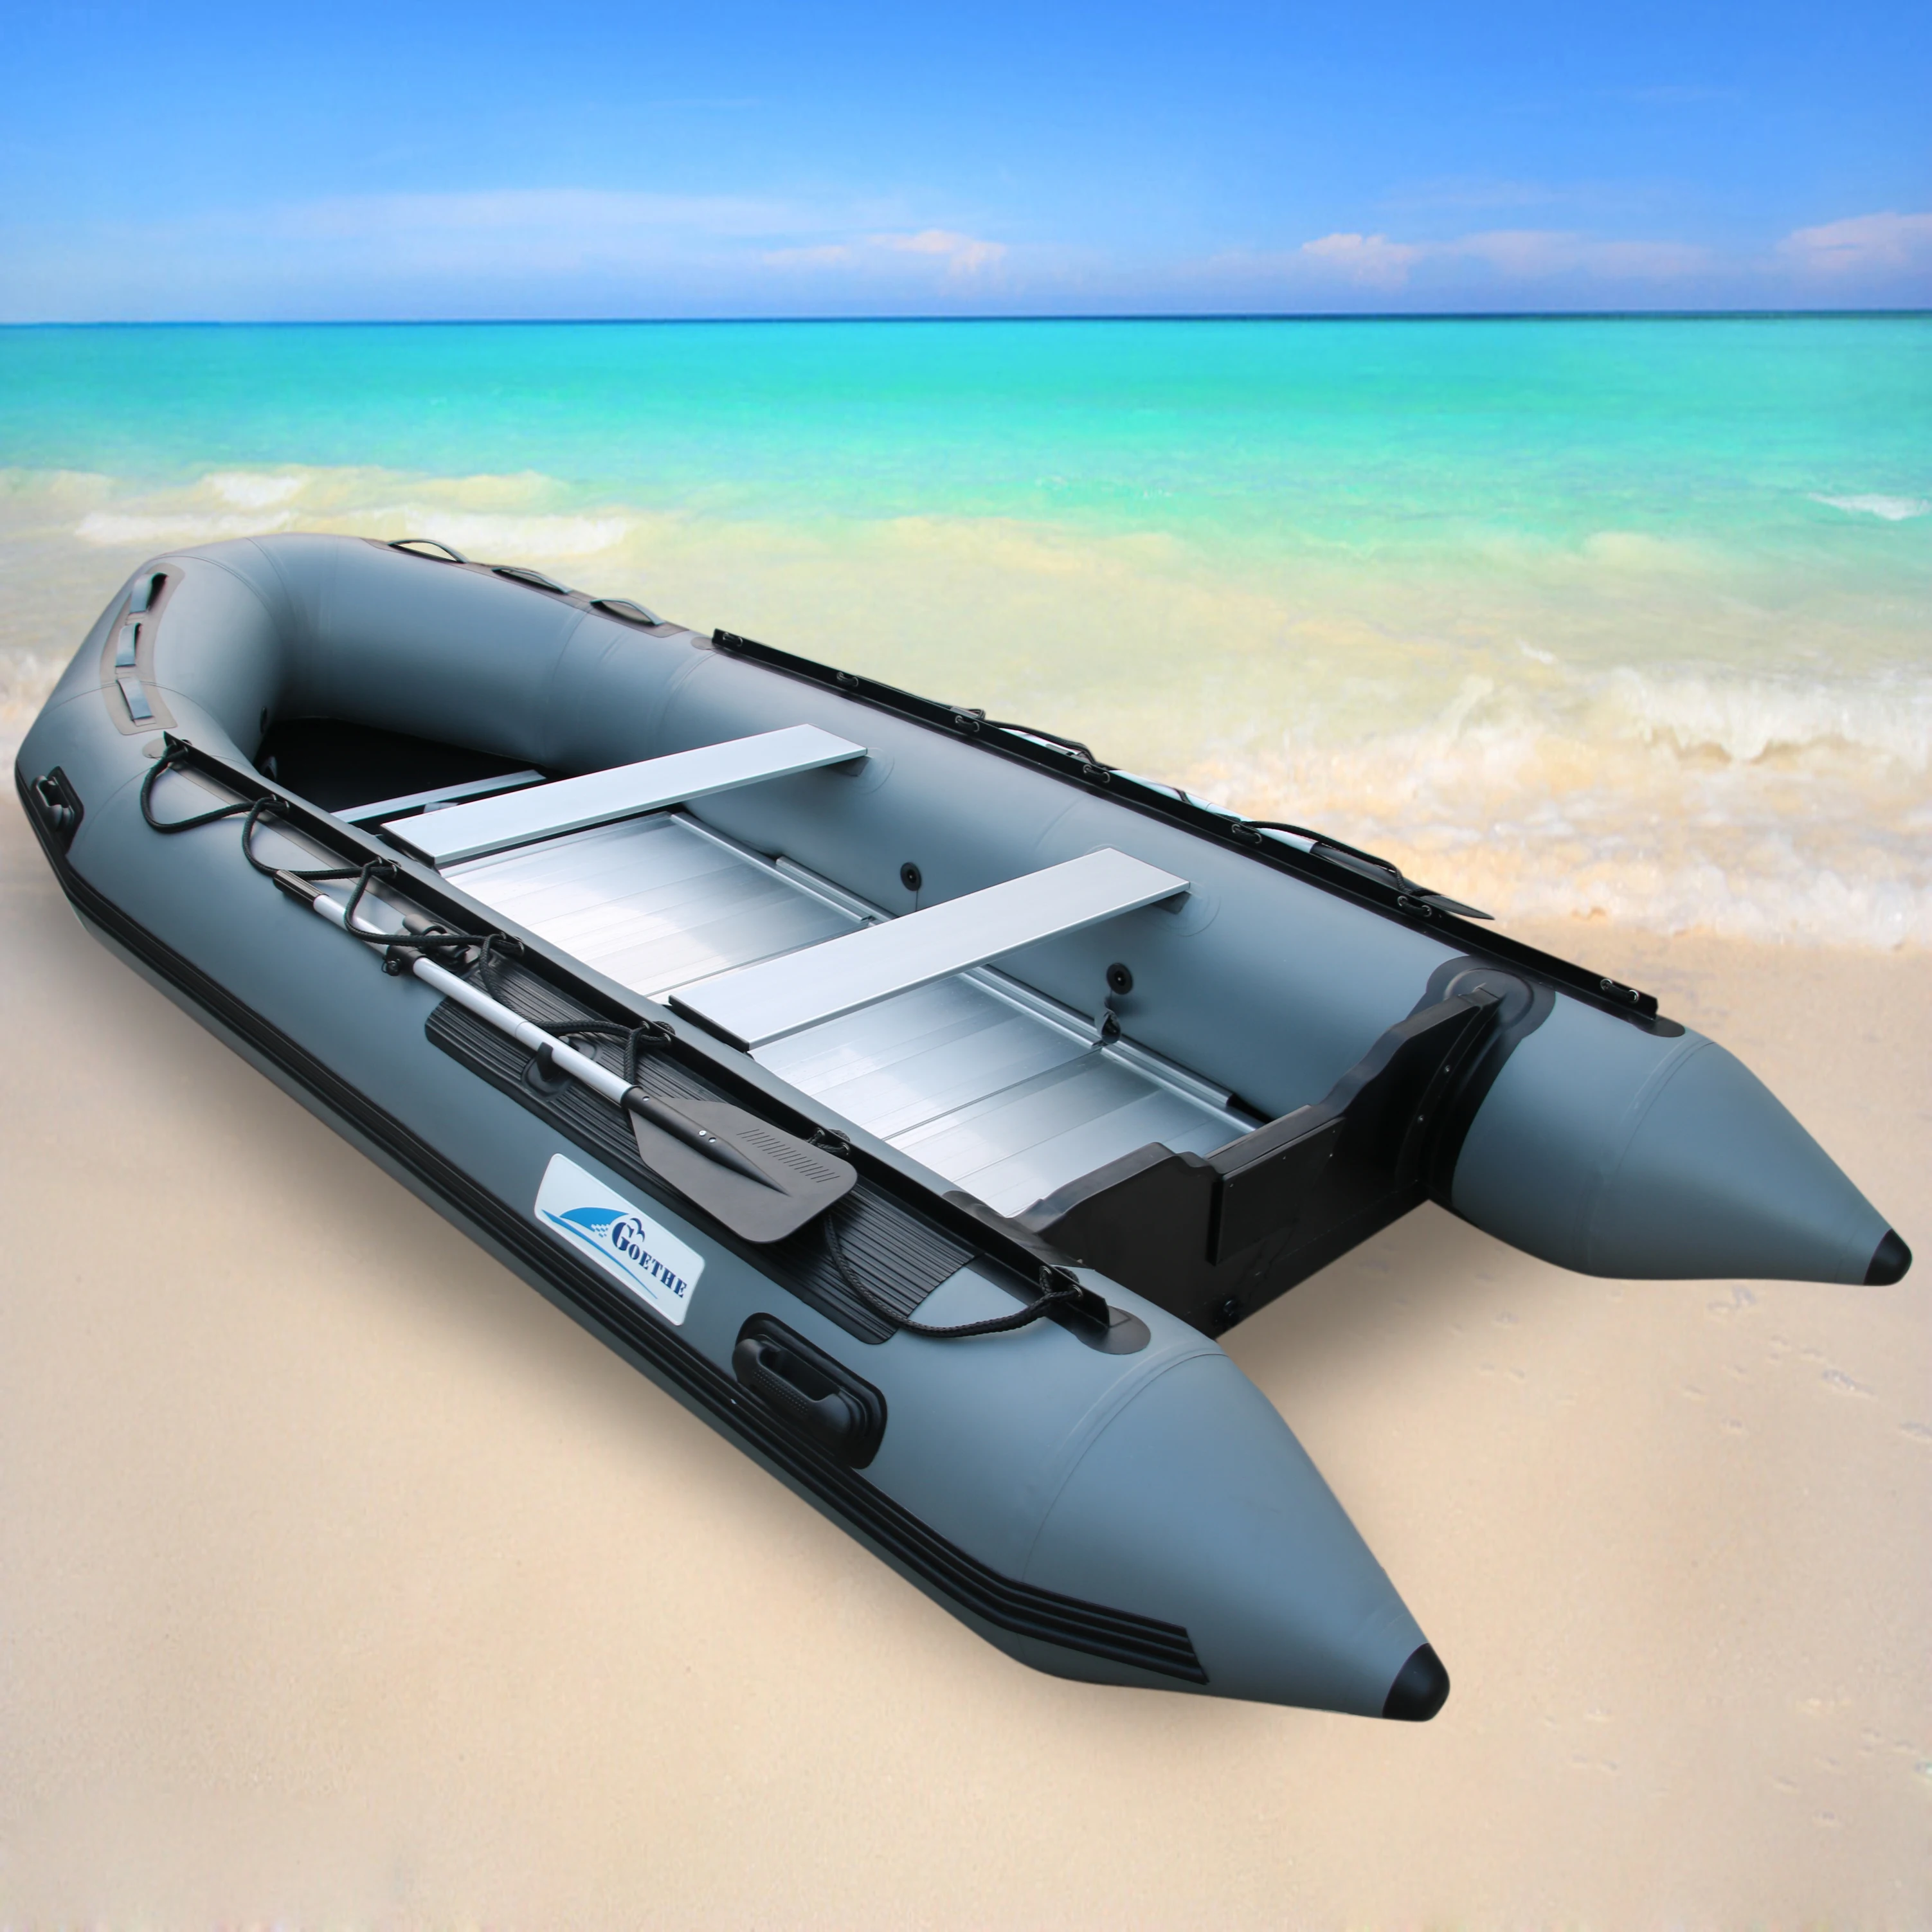 GTS 360 надувная лодка с алюминиевым полом на 6 человек|Гребные лодки| | - Фото №1